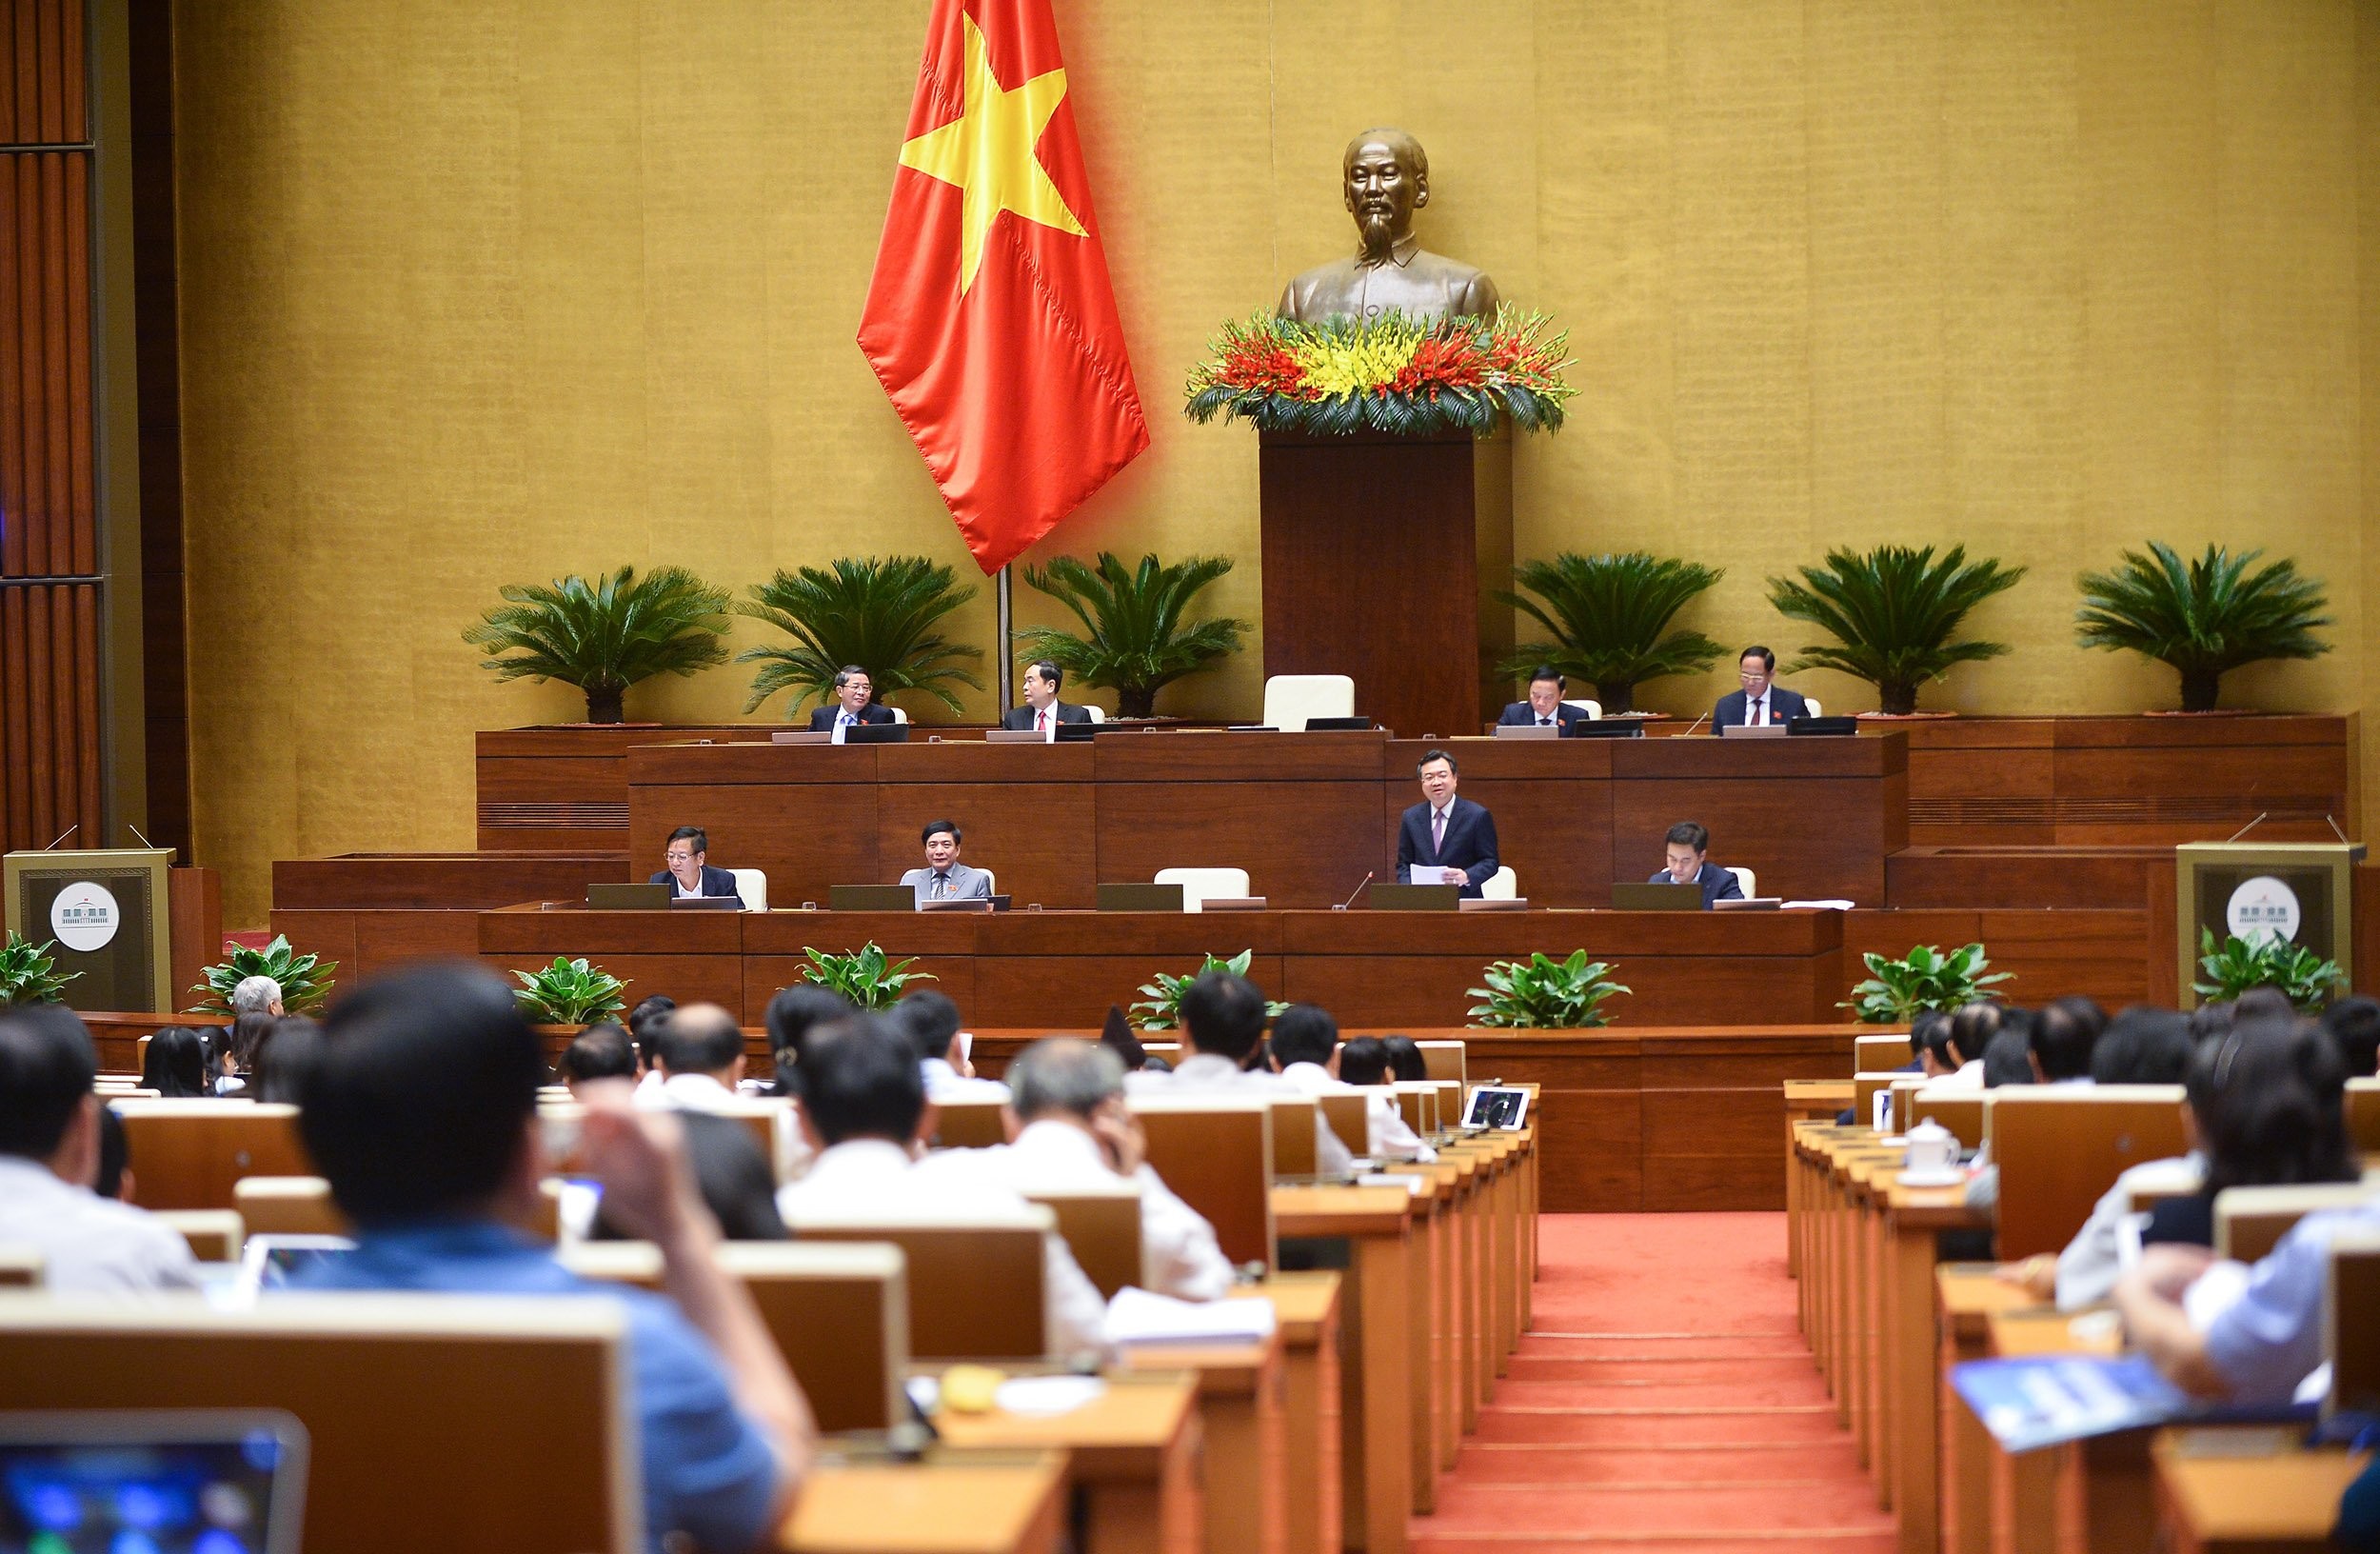 
Bộ trưởng Bộ Xây dựng Nguyễn Thanh Nghị trả lời chất vấn trước Quốc hội.
